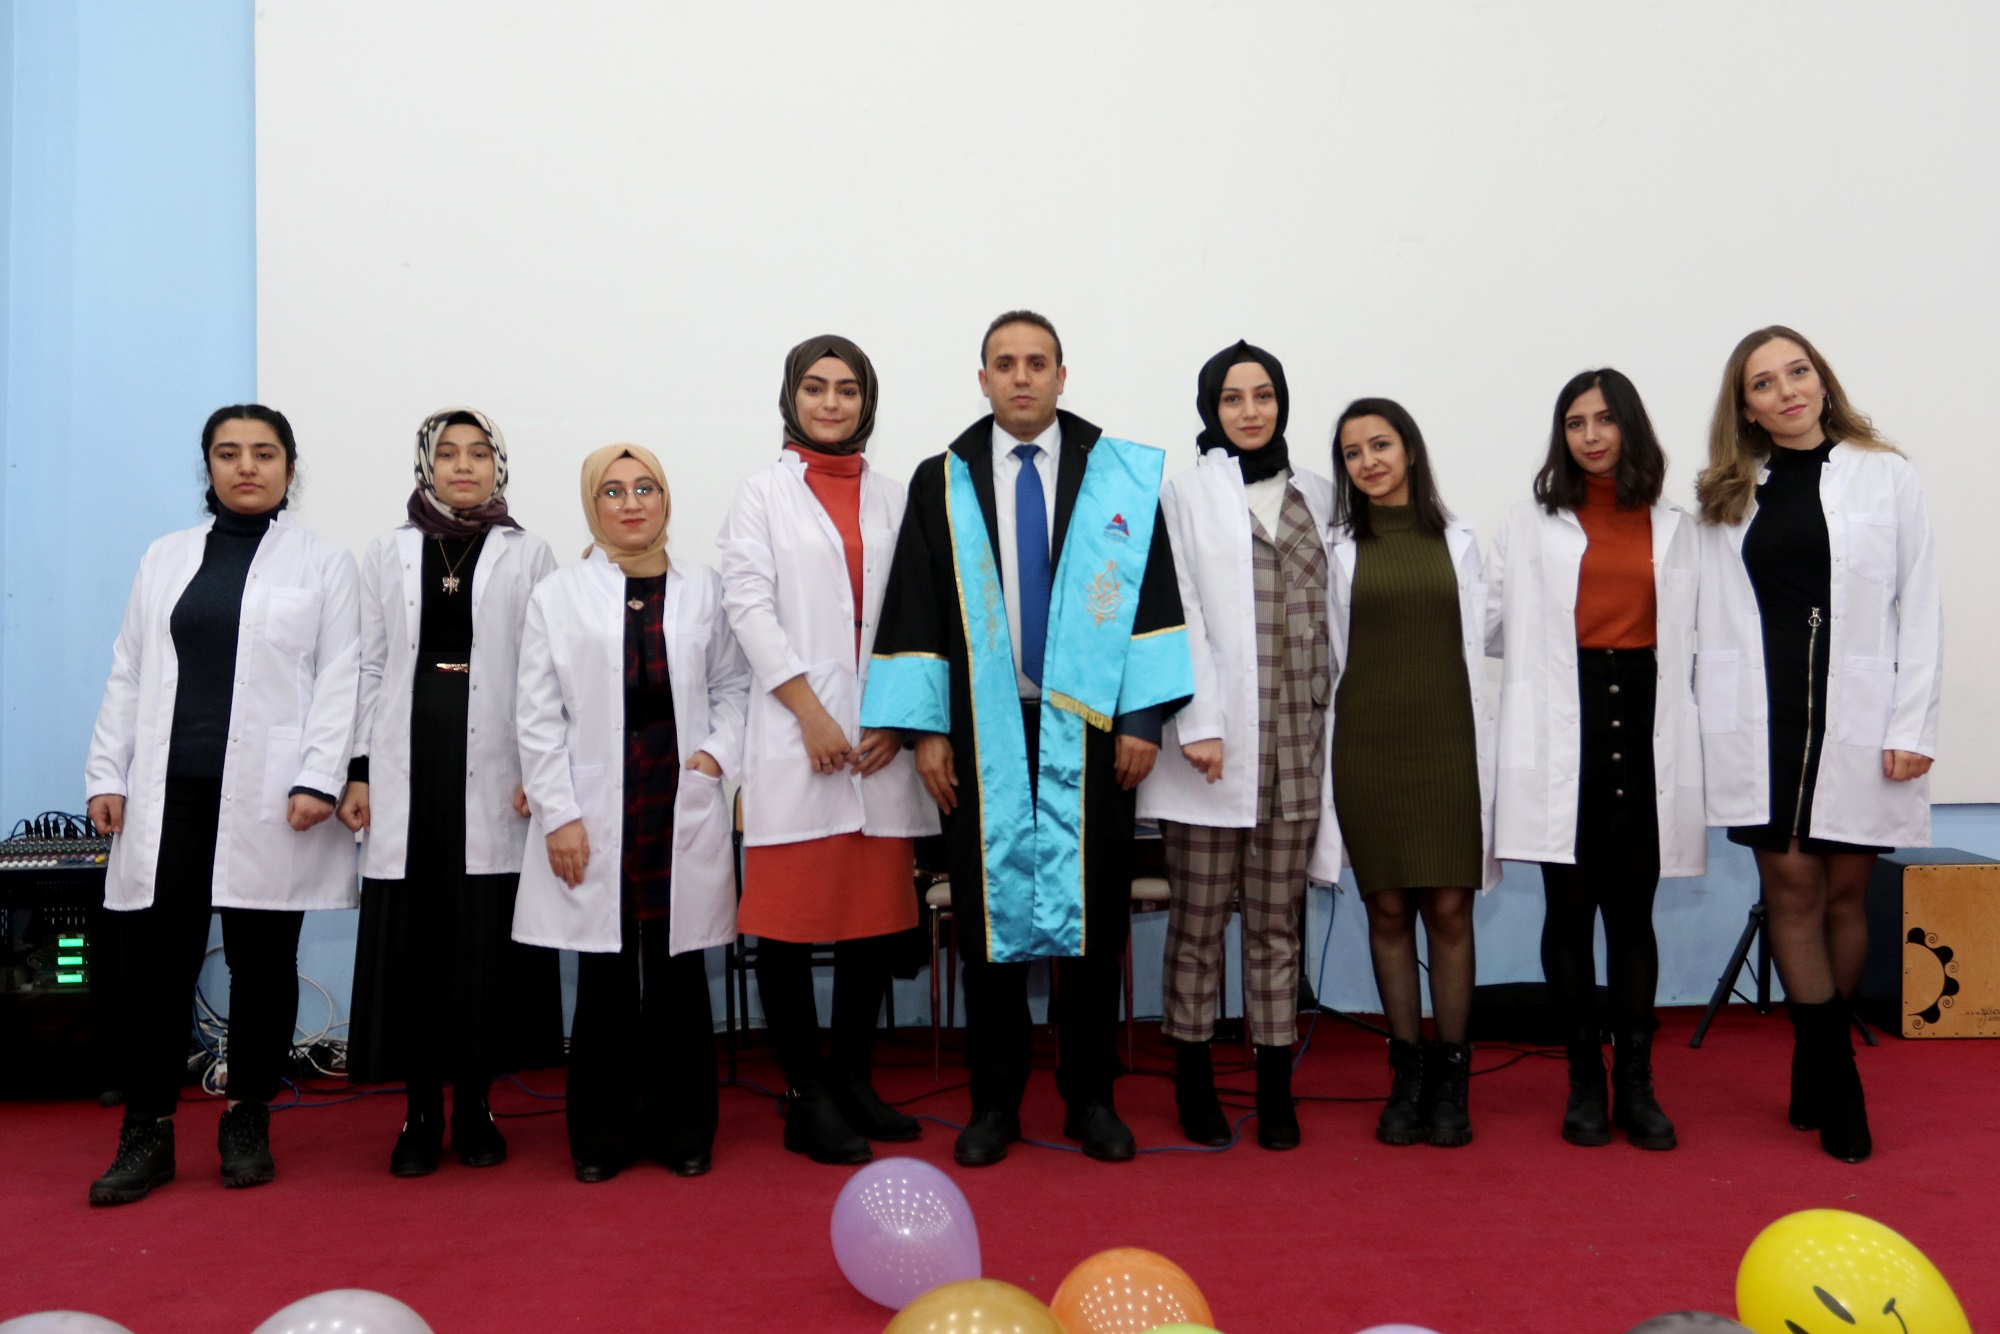 AİÇÜ Sağlık Yüksekokulu Öğrencileri İçin ‘Beyaz Önlük Giyme’ Töreni Düzenlendi